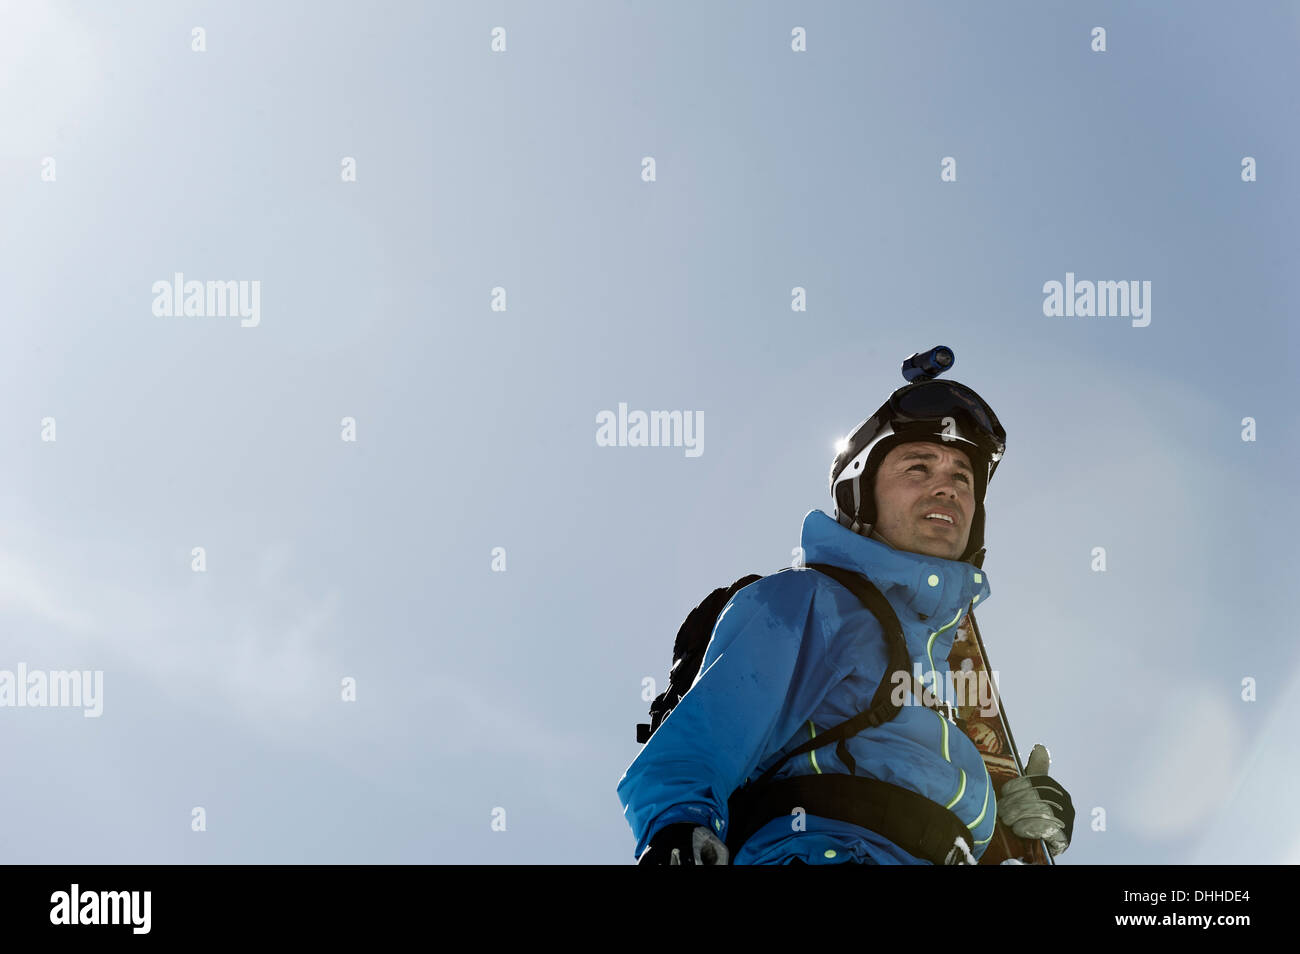 Man preparing to ski Stock Photo